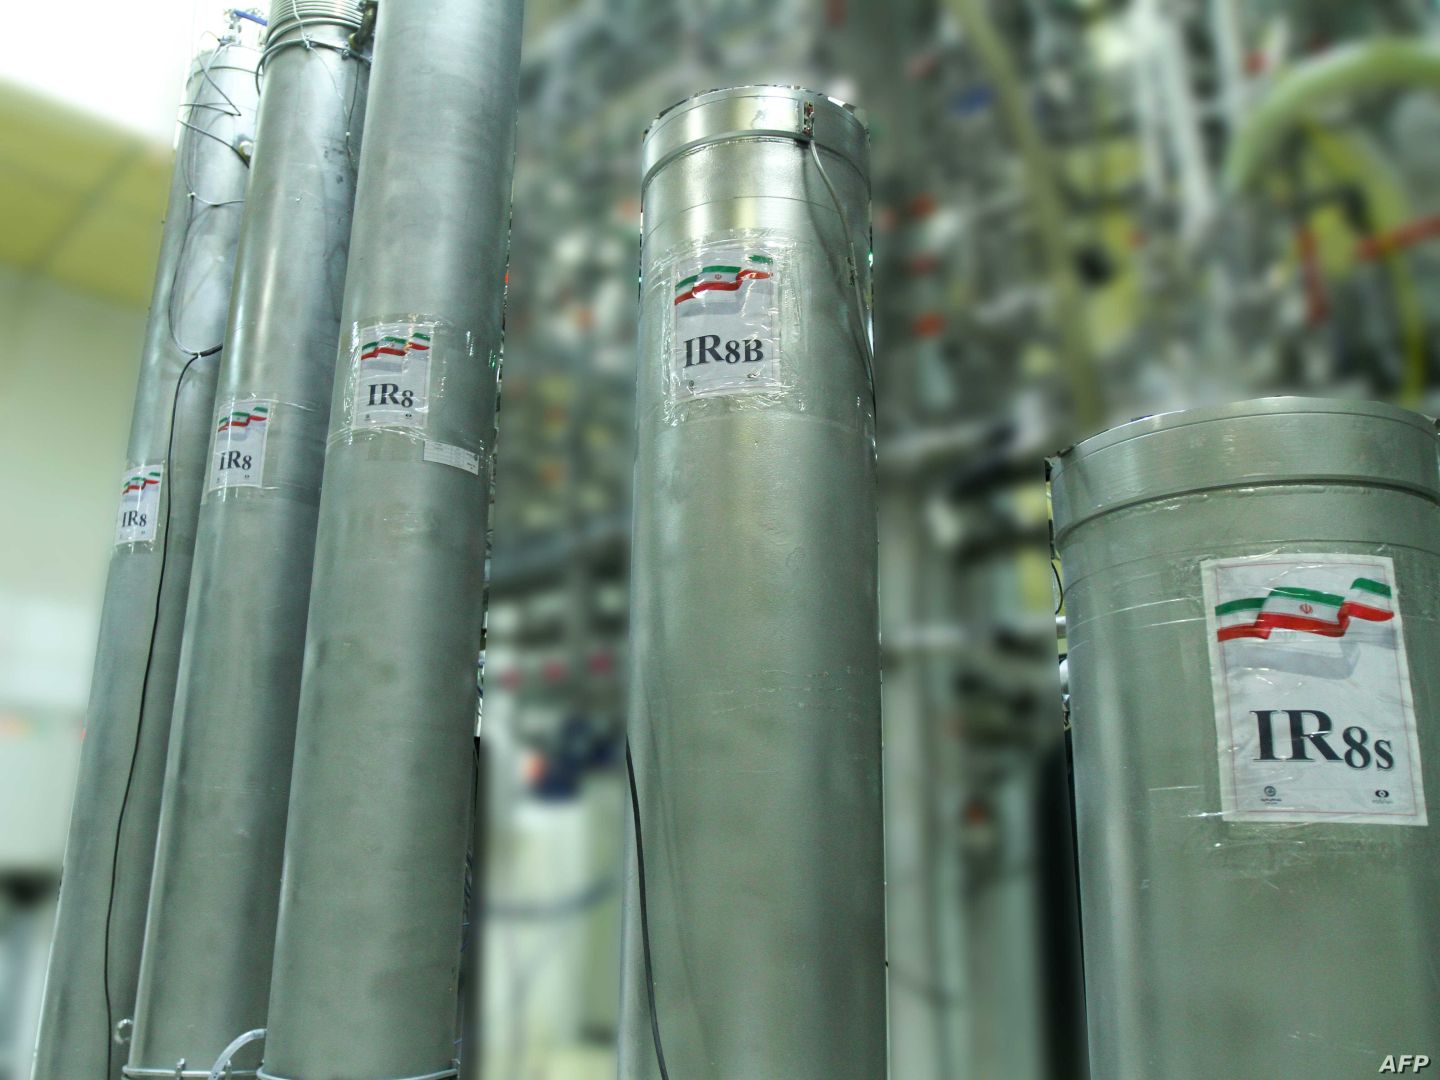 الطاقة الذرية: مخزون إيران من اليورانيوم يتجاوز المستوى المرخص به 27 مرة